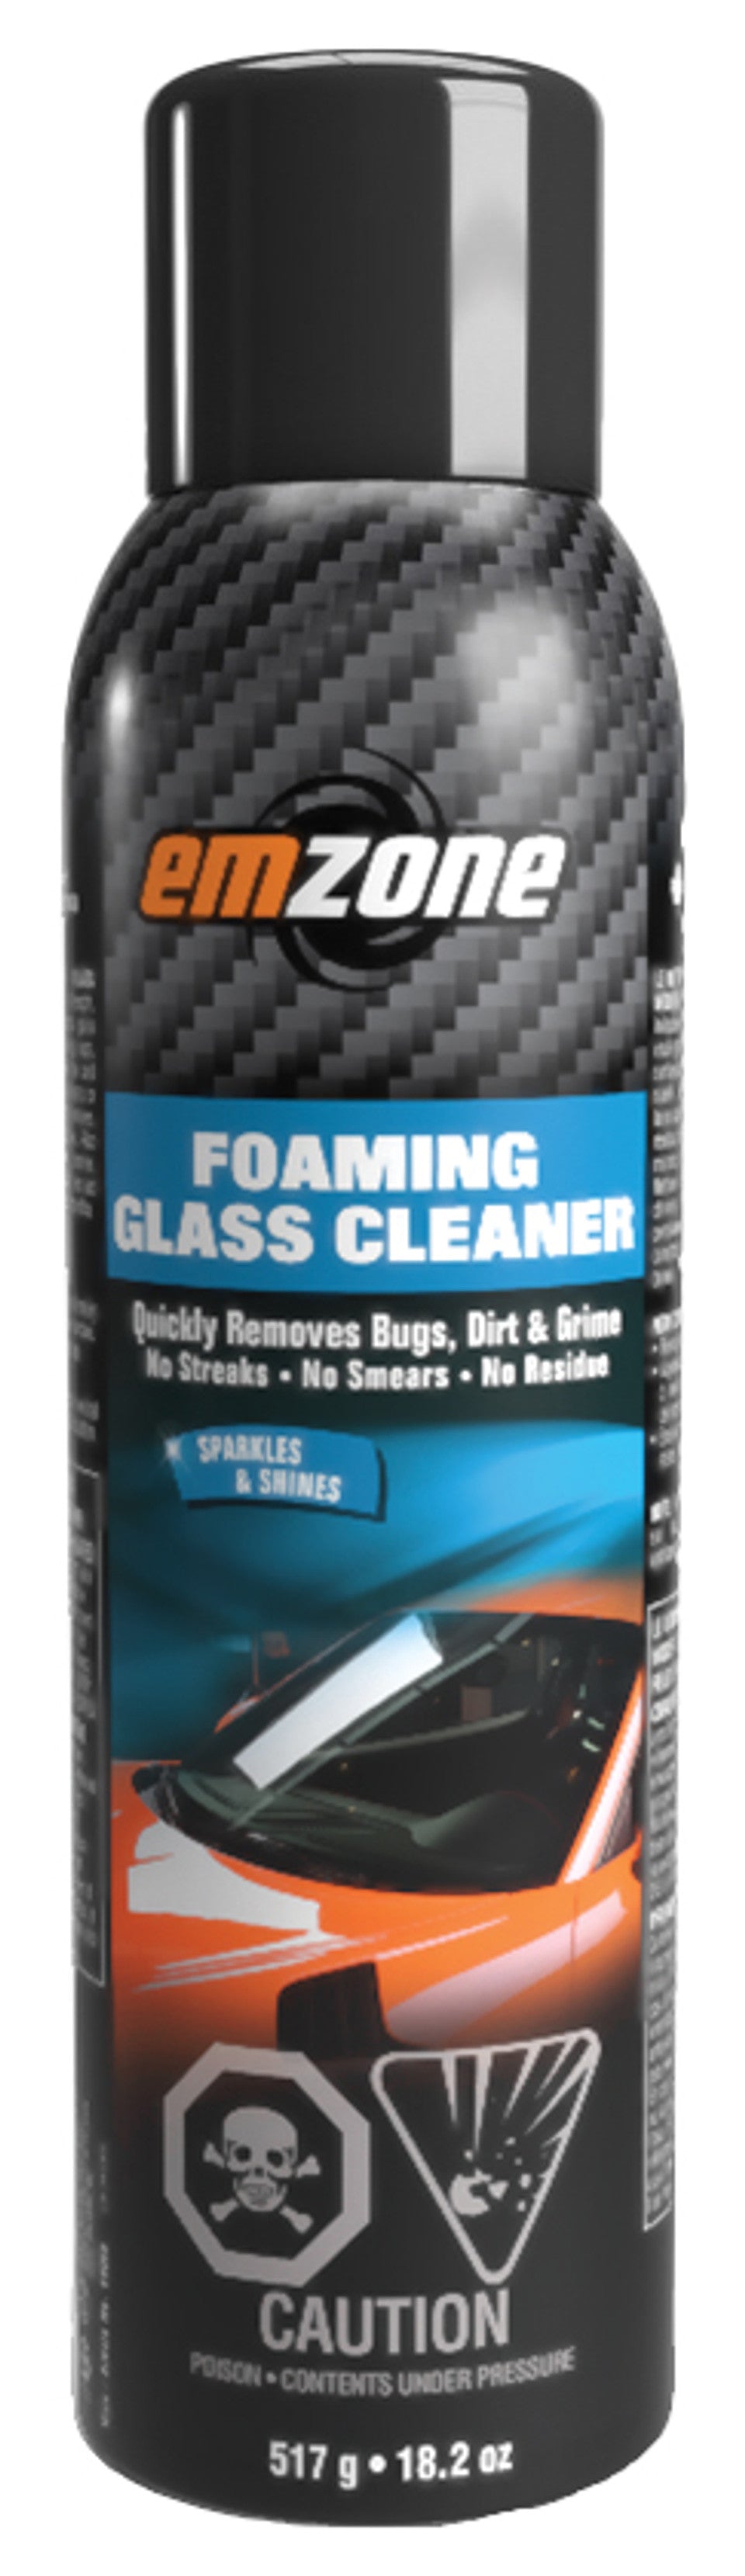 Emzone 44005 Emzone Foaming Glass Cleaner, 517 G, Box Of 12